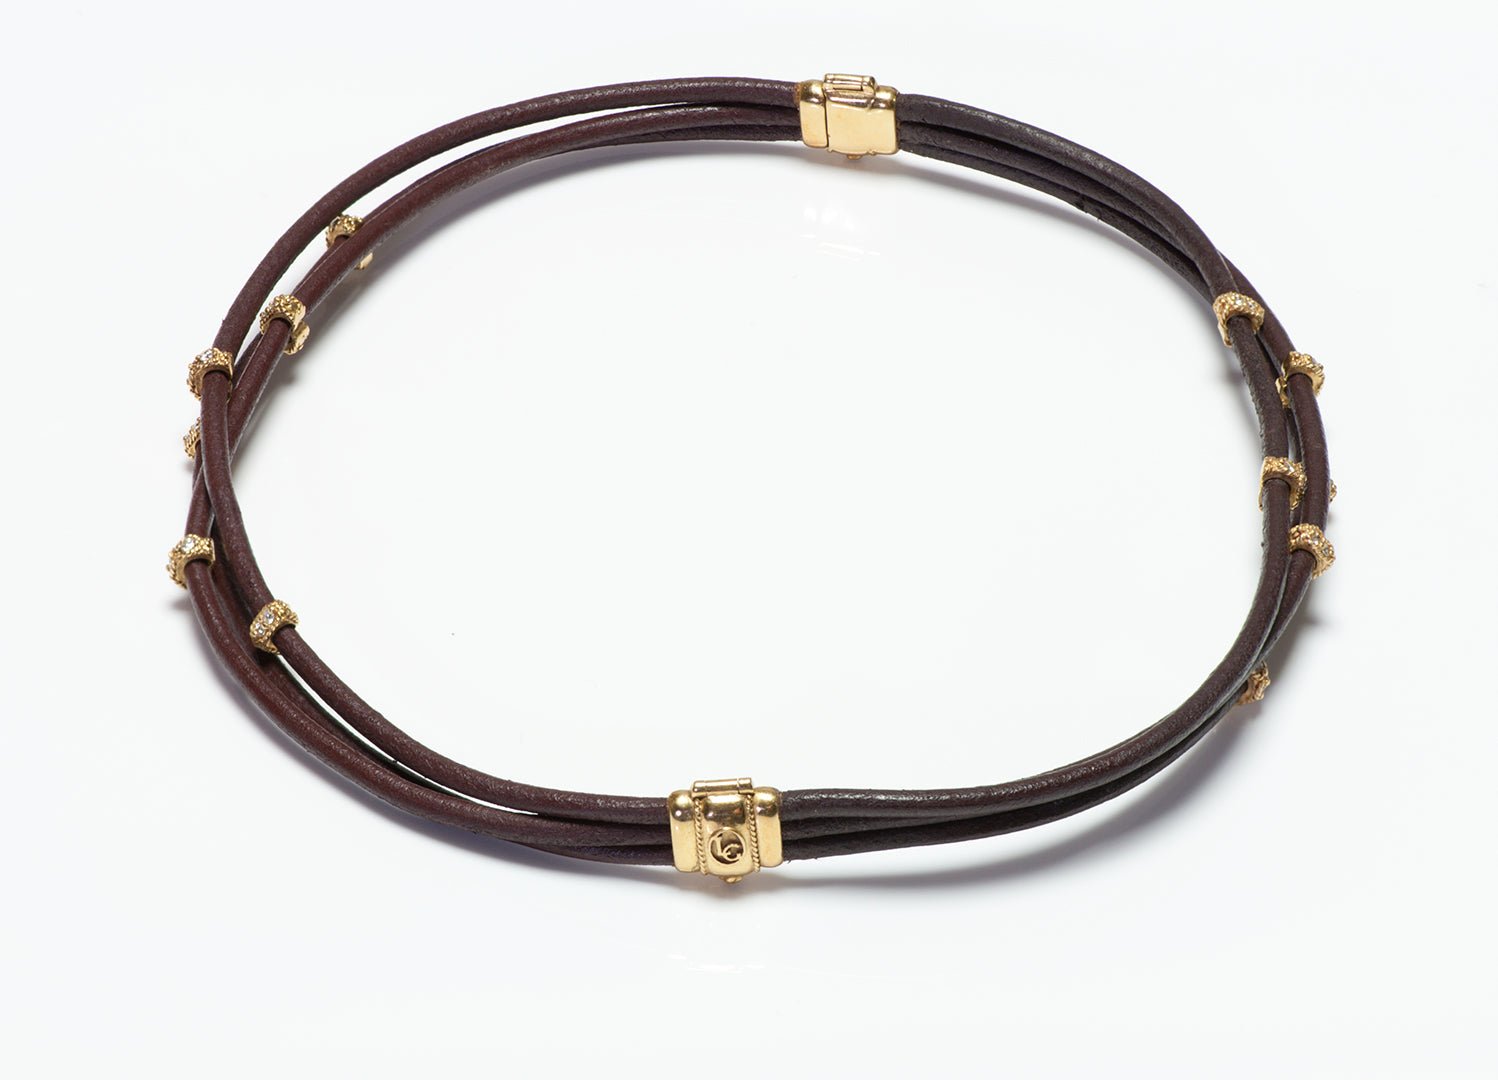 Leslie Greene 18K Gold Diamond Leather Bracelet Necklace Choker